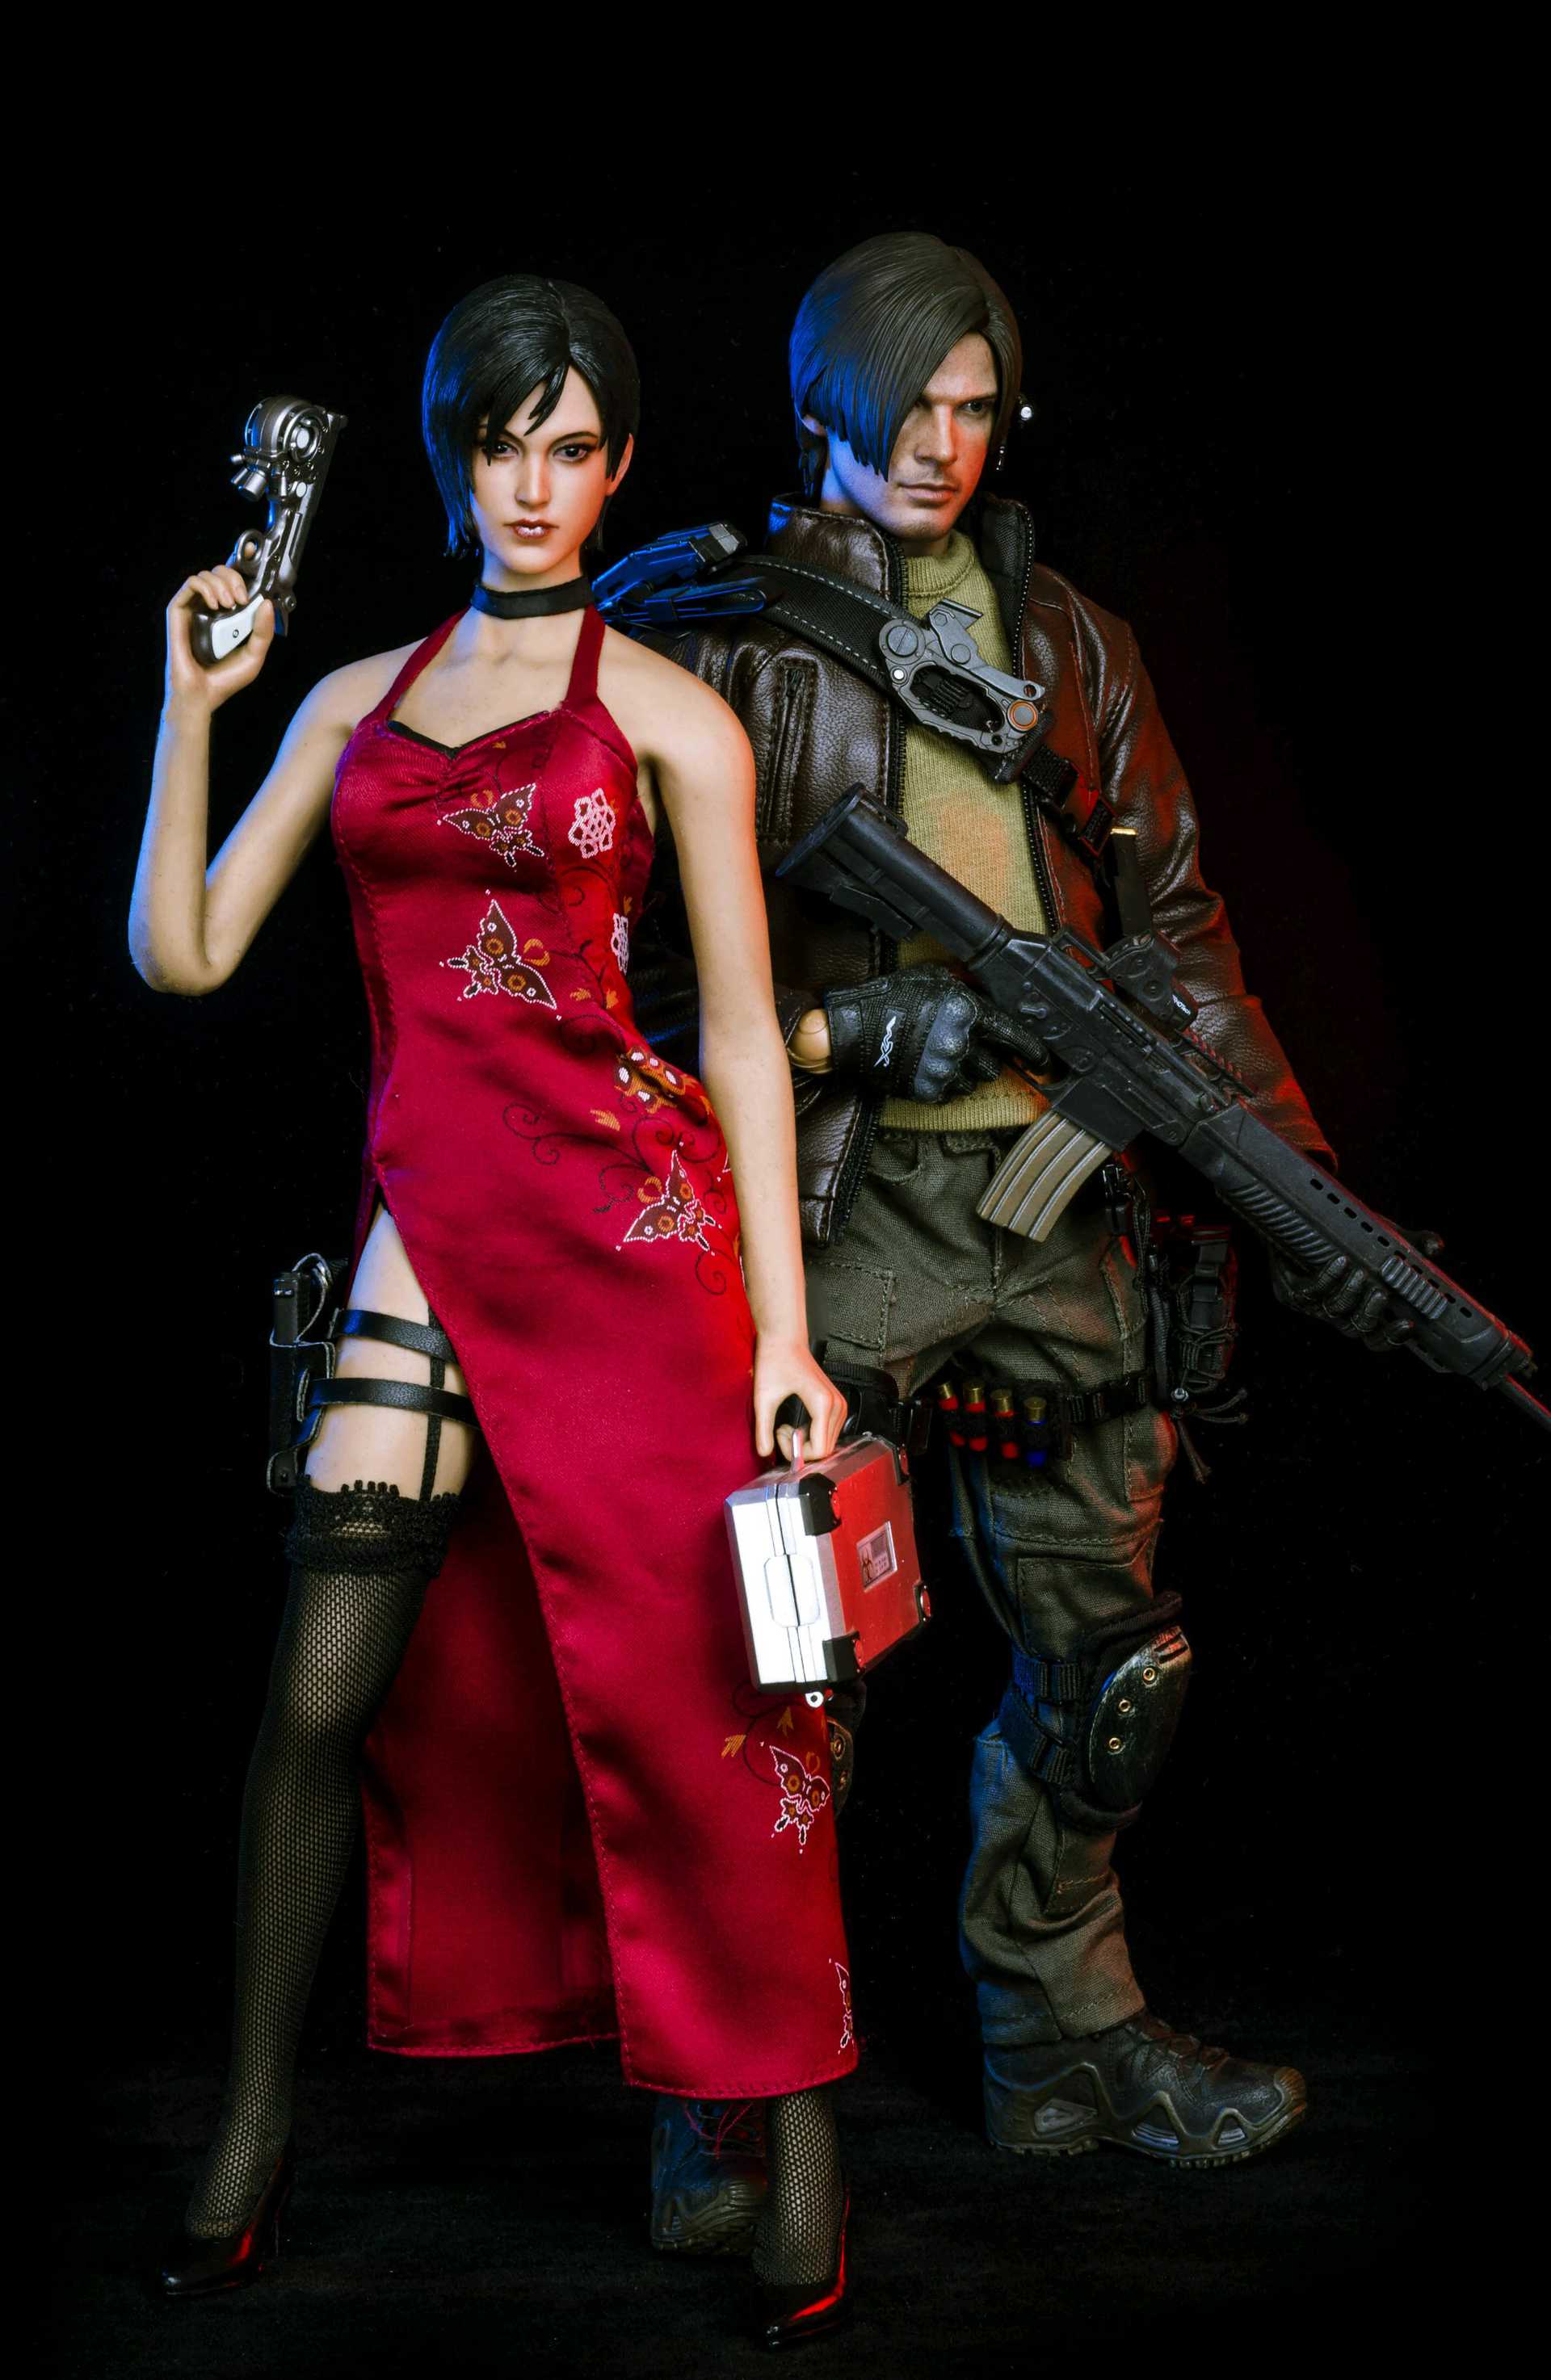 Resident Evil 2 - Ada Wong Dam Toys - Machinegun